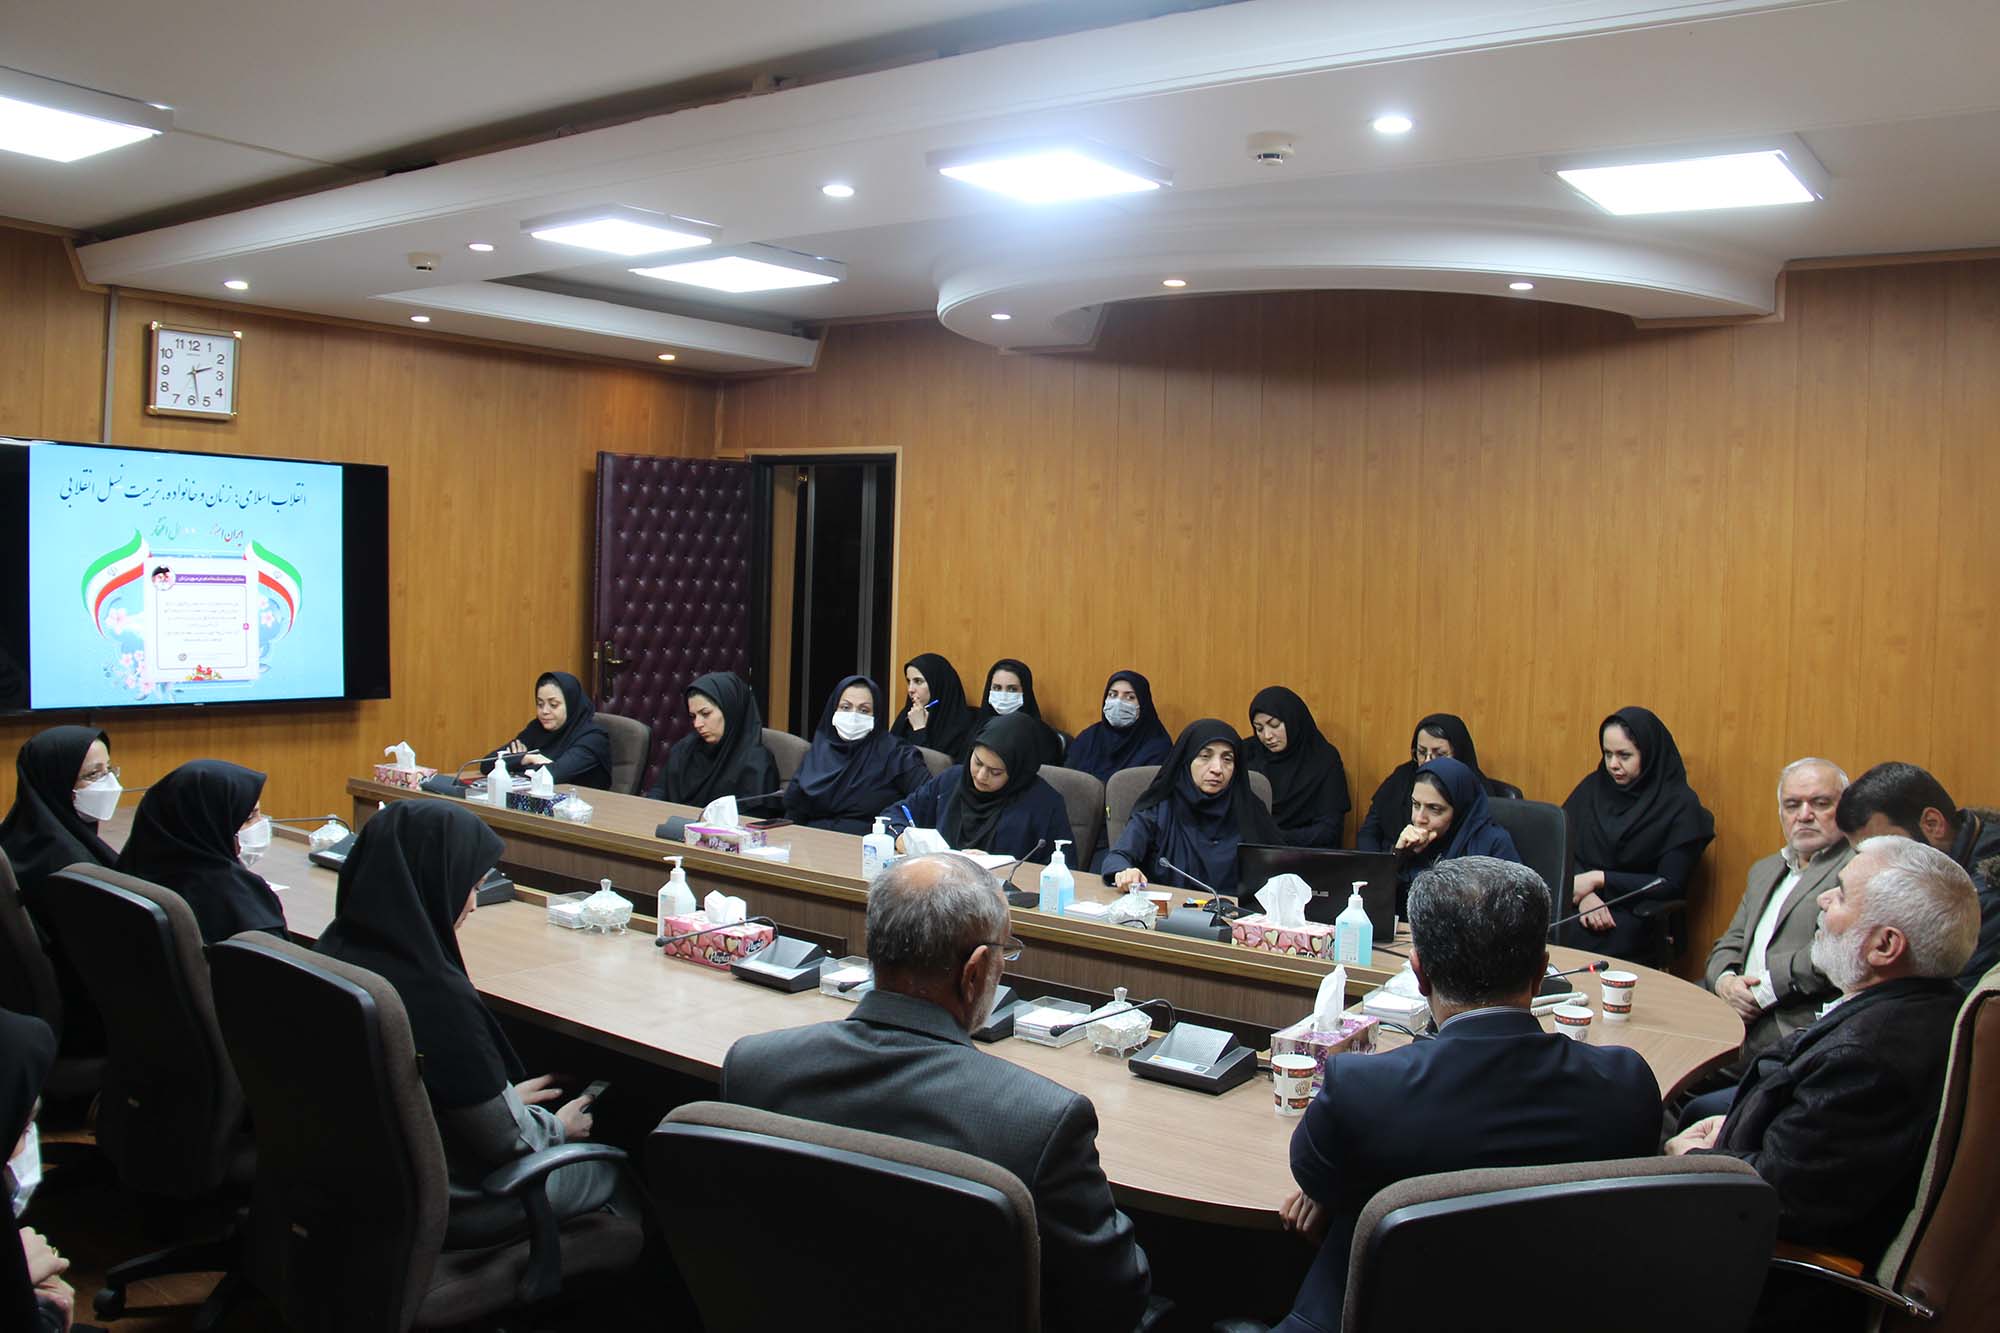 ۴۴سال افتخار/ برگزاری نشست تخصصی با موضوع زنان و تحکیم خانواده به مناسبت دهه فجر